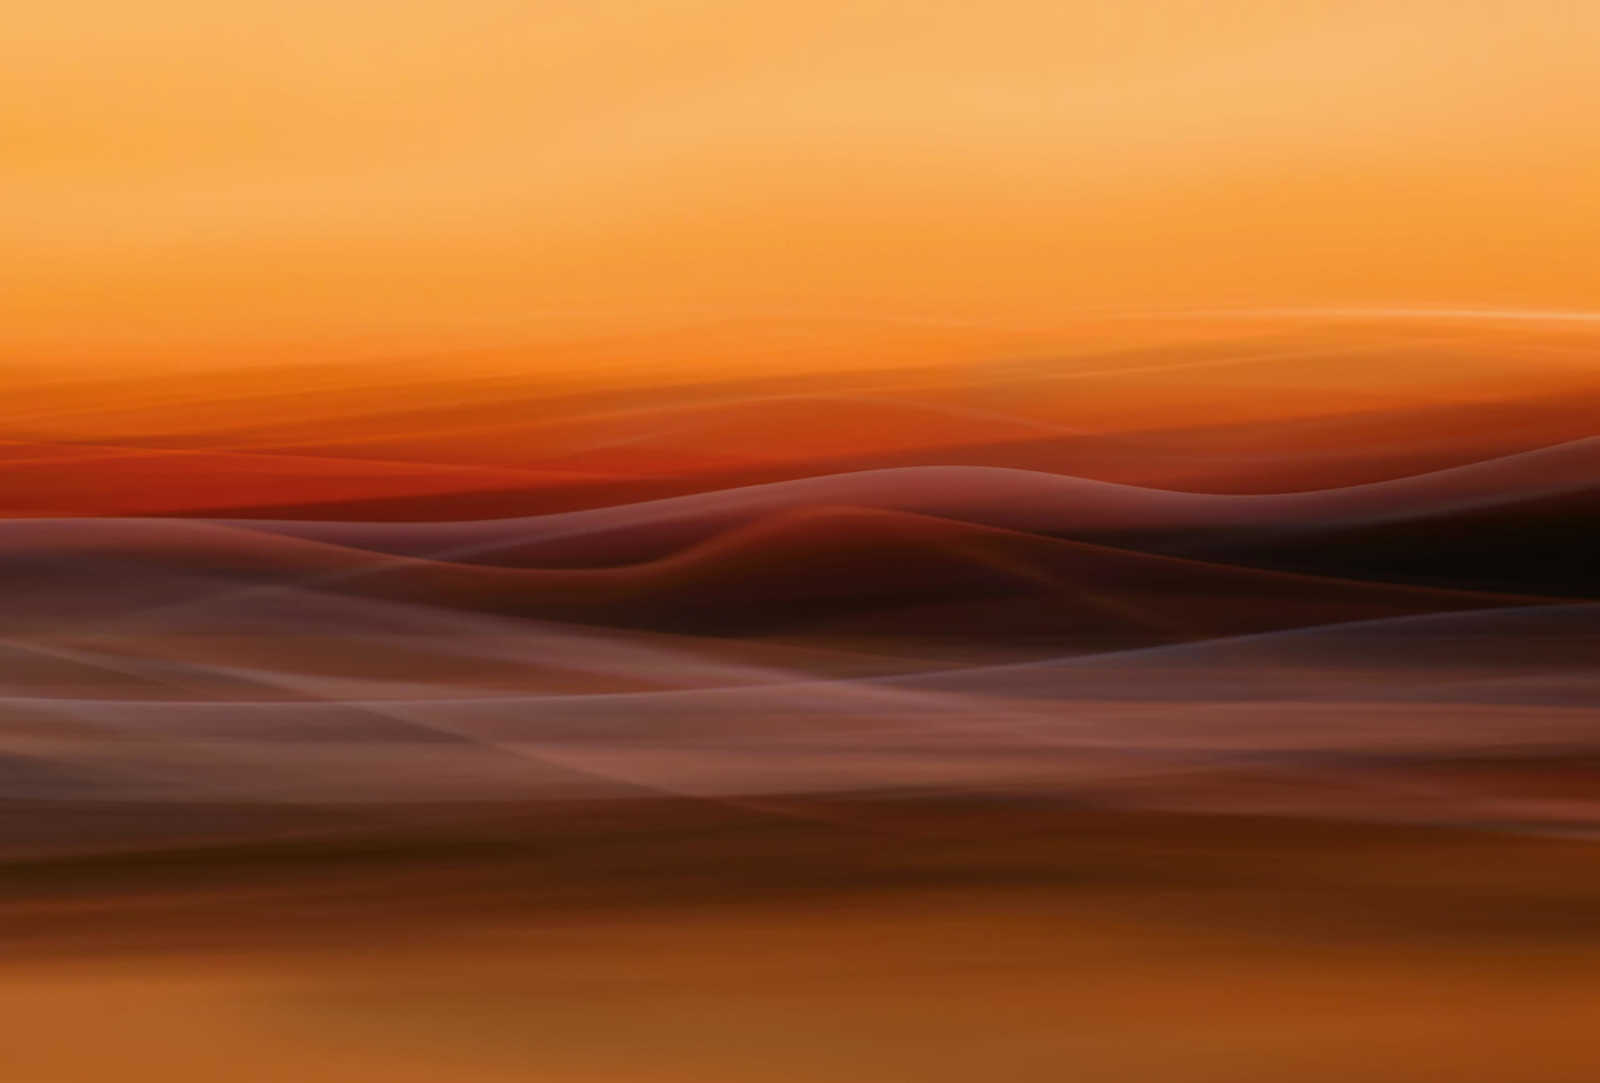         Fototapete abstrakter Nebel – Orange, Gelb, Rot
    